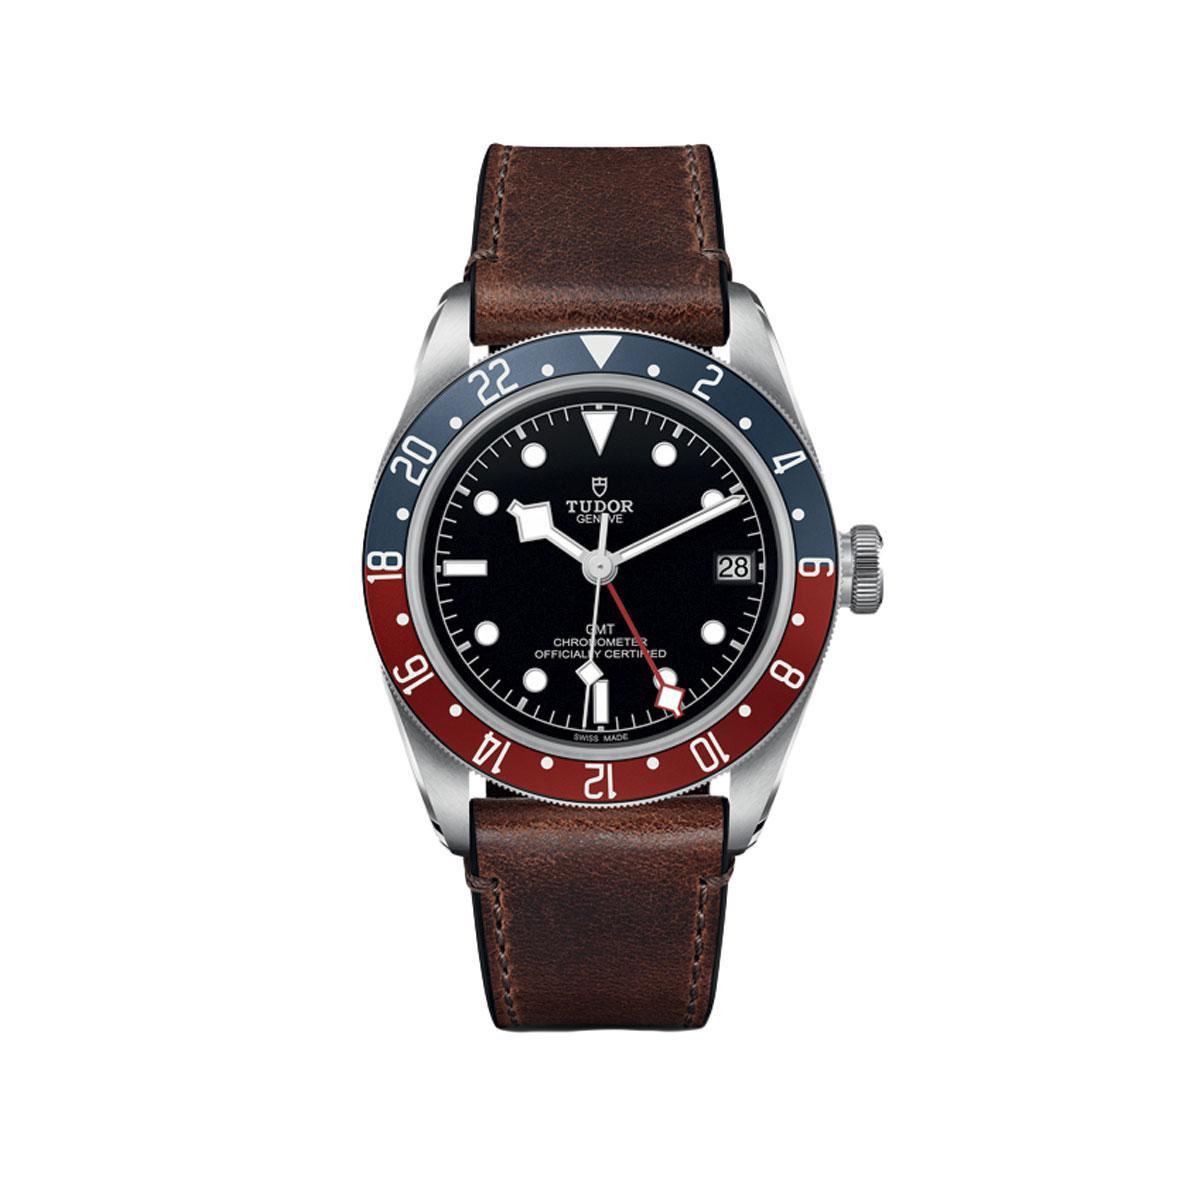 Black Bay GMT, Tudor: montre mécanique automatique GMT en acier avec réserve de marche de 70 heures et bracelet en cuir (3 390 euros). tudorwatch.com